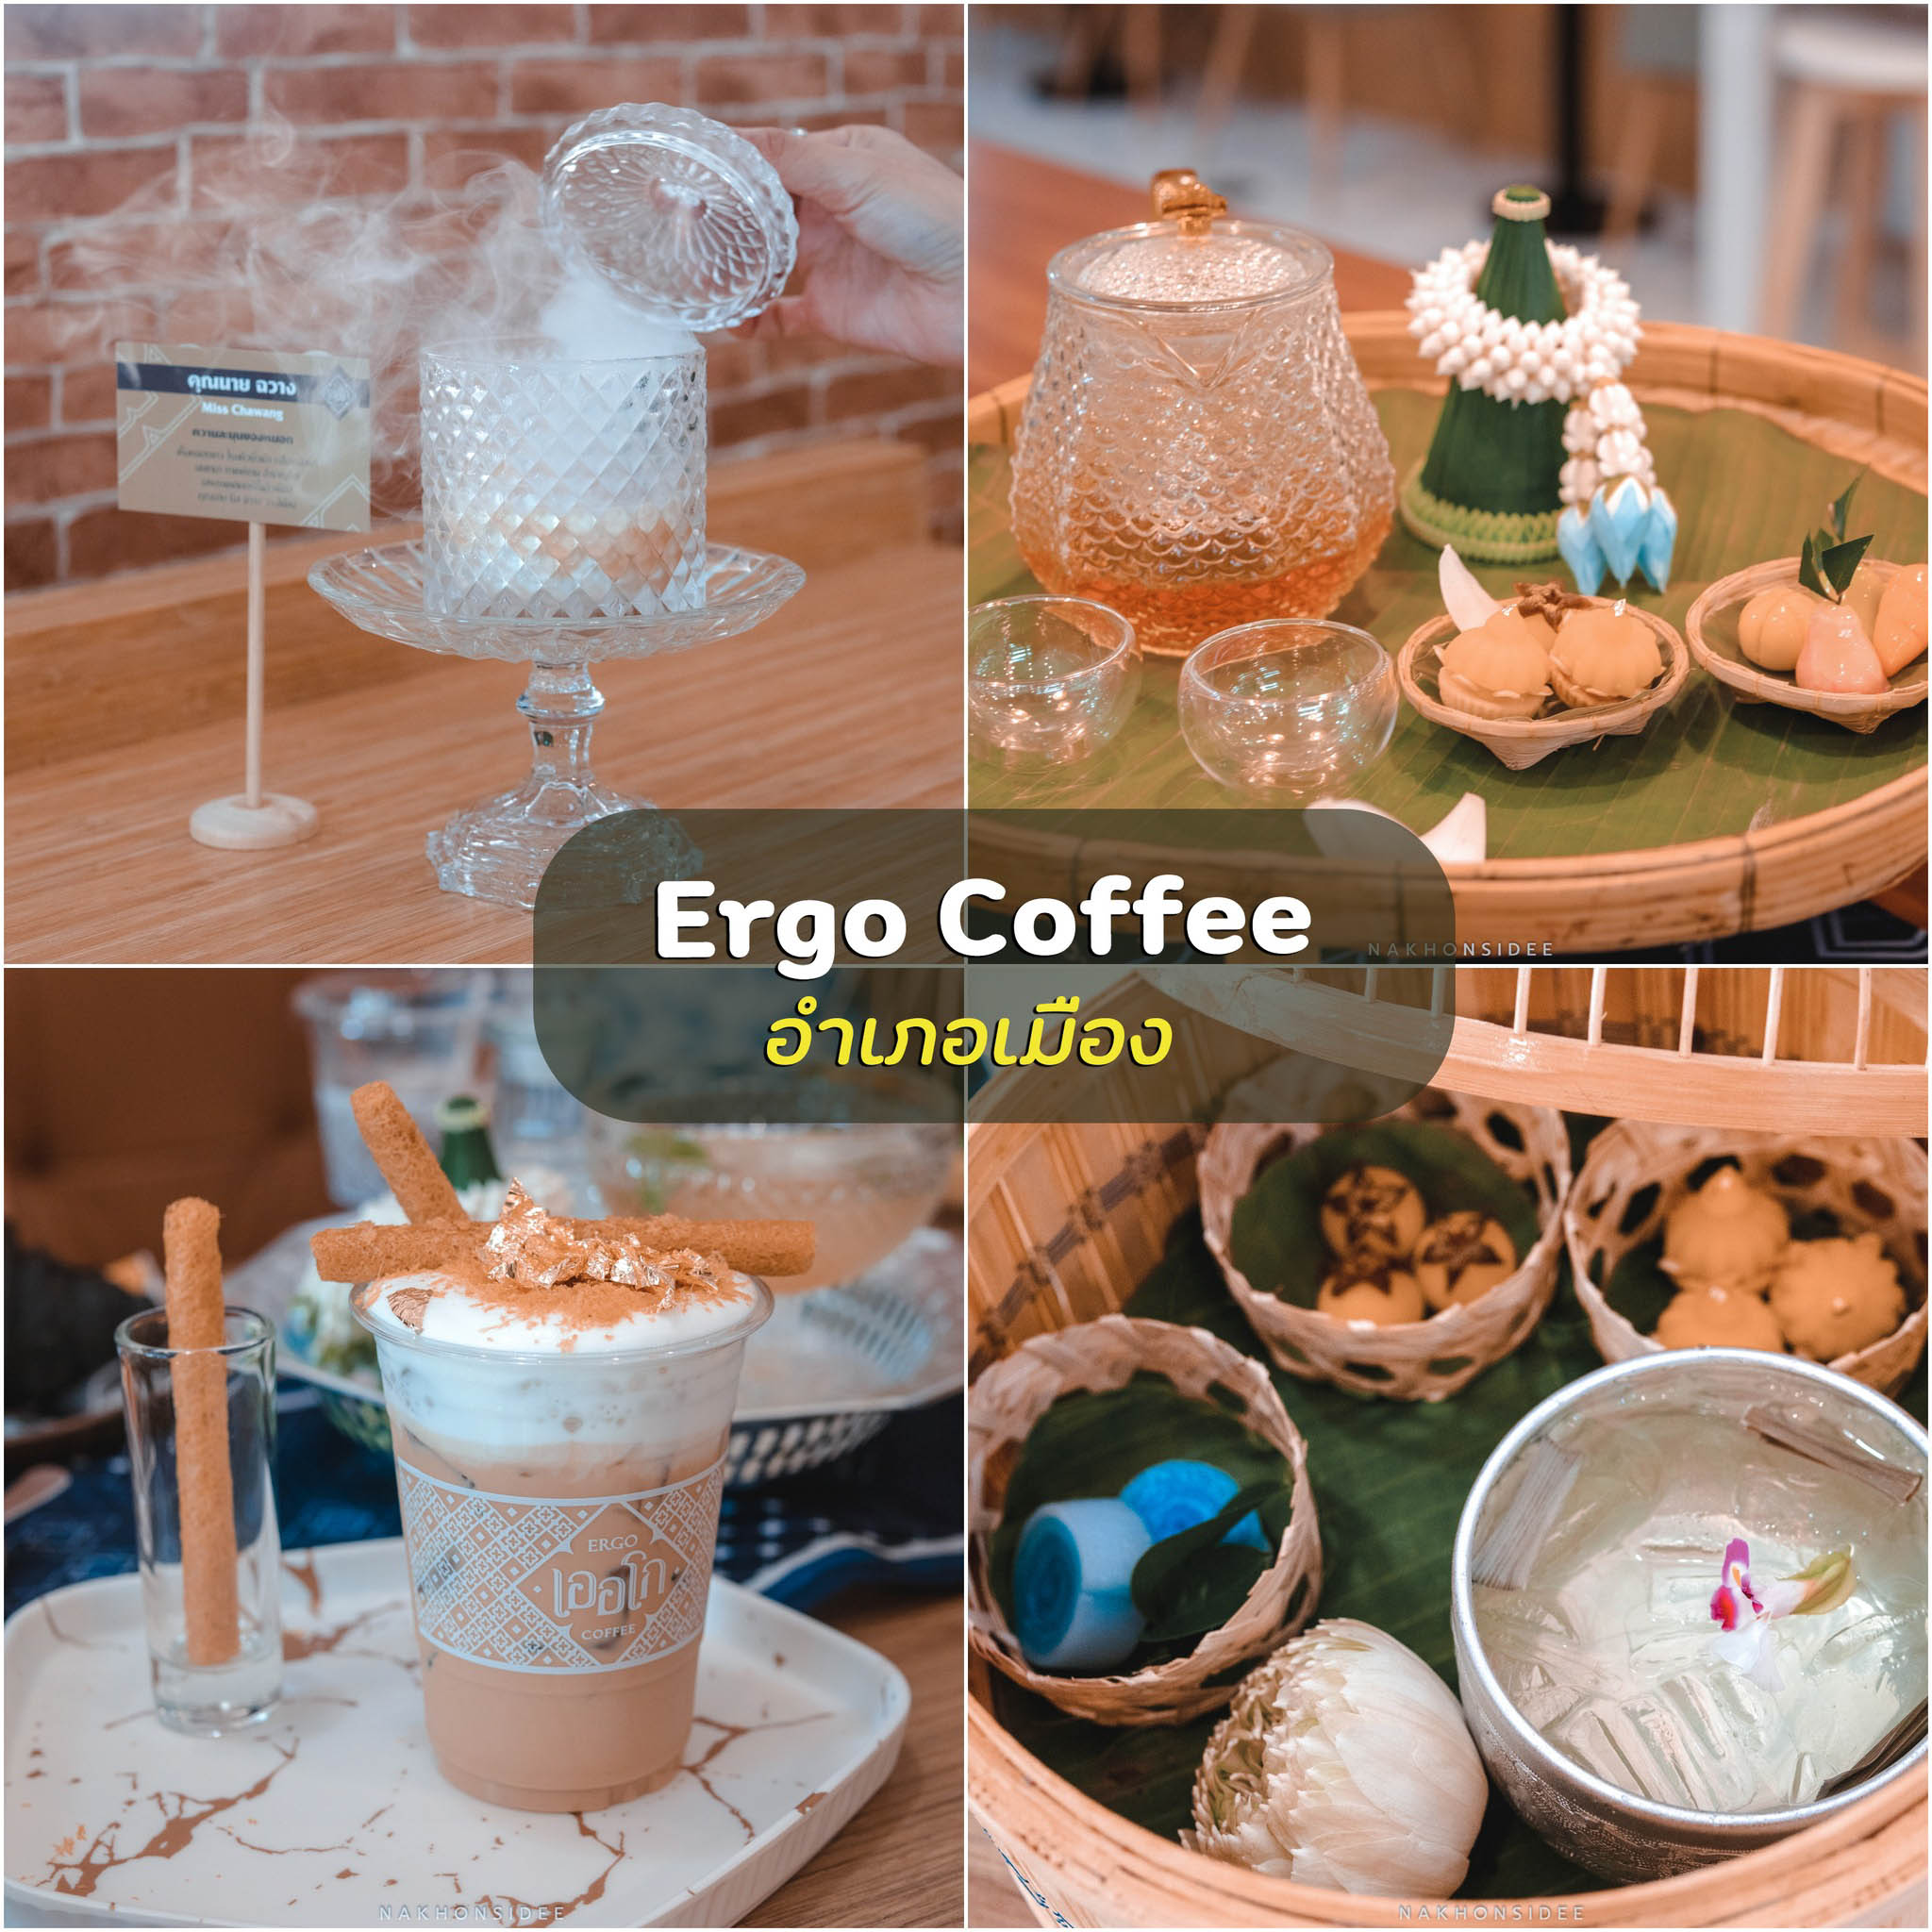 Ergo-Coffee- หนึ่งในคาเฟ่ที่ปังที่สุดด้วยการผสมผสานระหว่างเอกลักษณ์ด้านกาแฟ-กลิ่นไอขนมใต้-และขนมไทยครับ-ดีย์ต่อใจสุดๆ-แต่แอดชอบโกโก้มาก-อิอิ-
 ที่เที่ยวธรรมชาตินครศรีธรรมราช,นครศรี,จุดเช็คอิน,ที่พัก